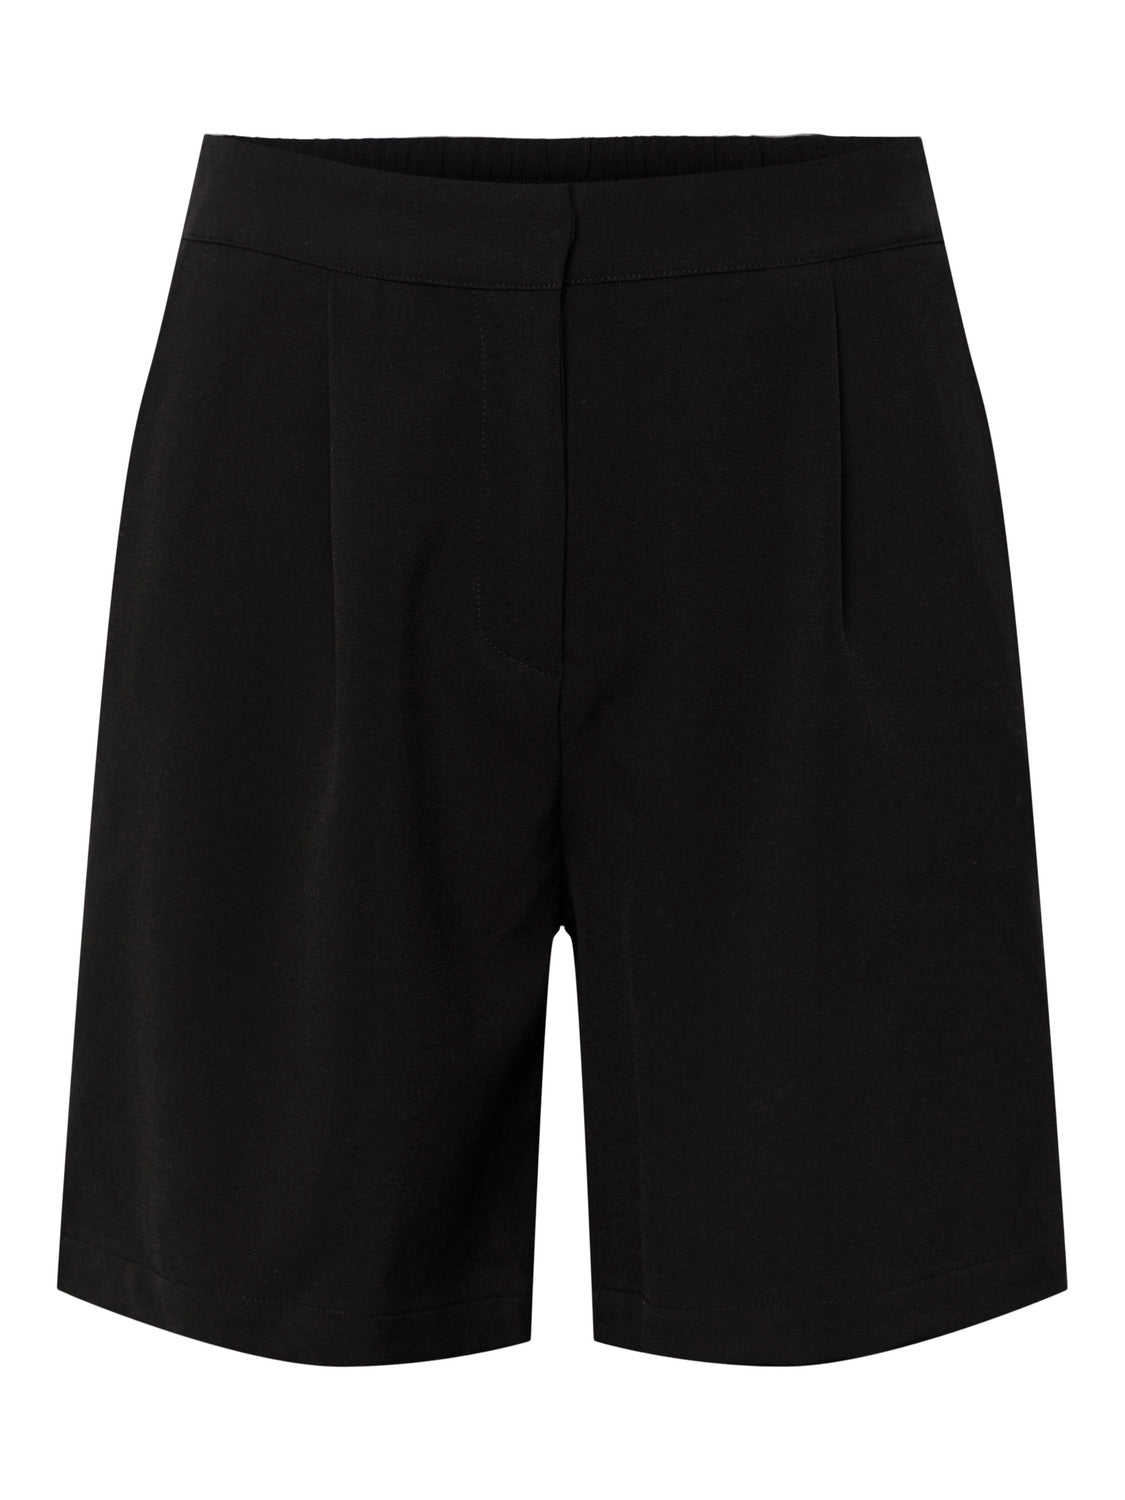 YASHELEN Shorts - Black